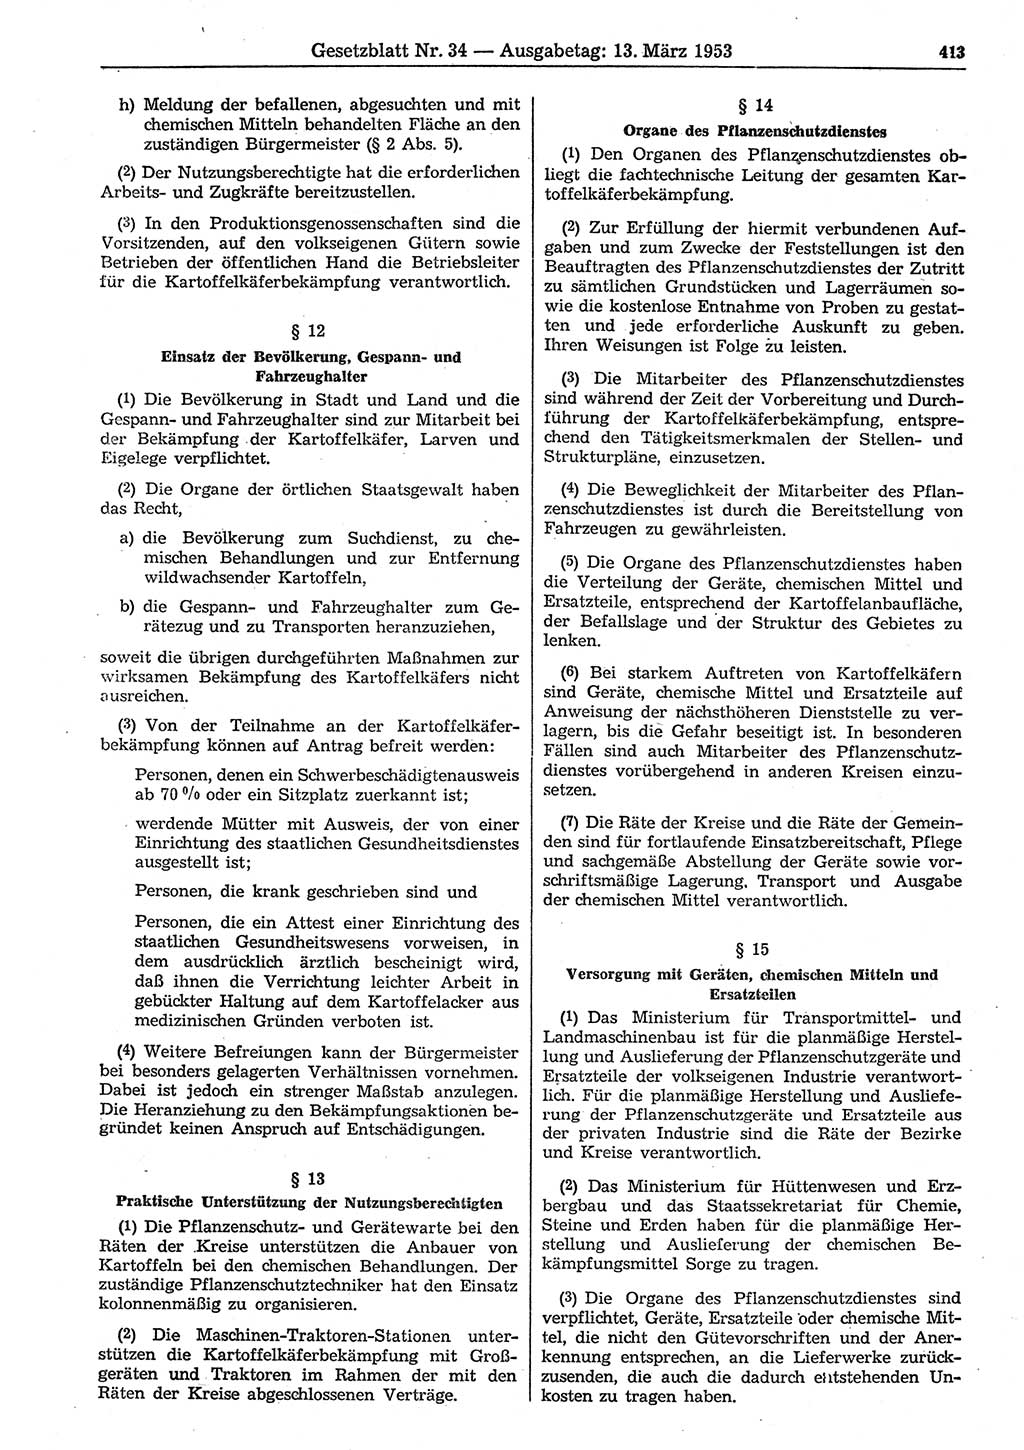 Gesetzblatt (GBl.) der Deutschen Demokratischen Republik (DDR) 1953, Seite 413 (GBl. DDR 1953, S. 413)